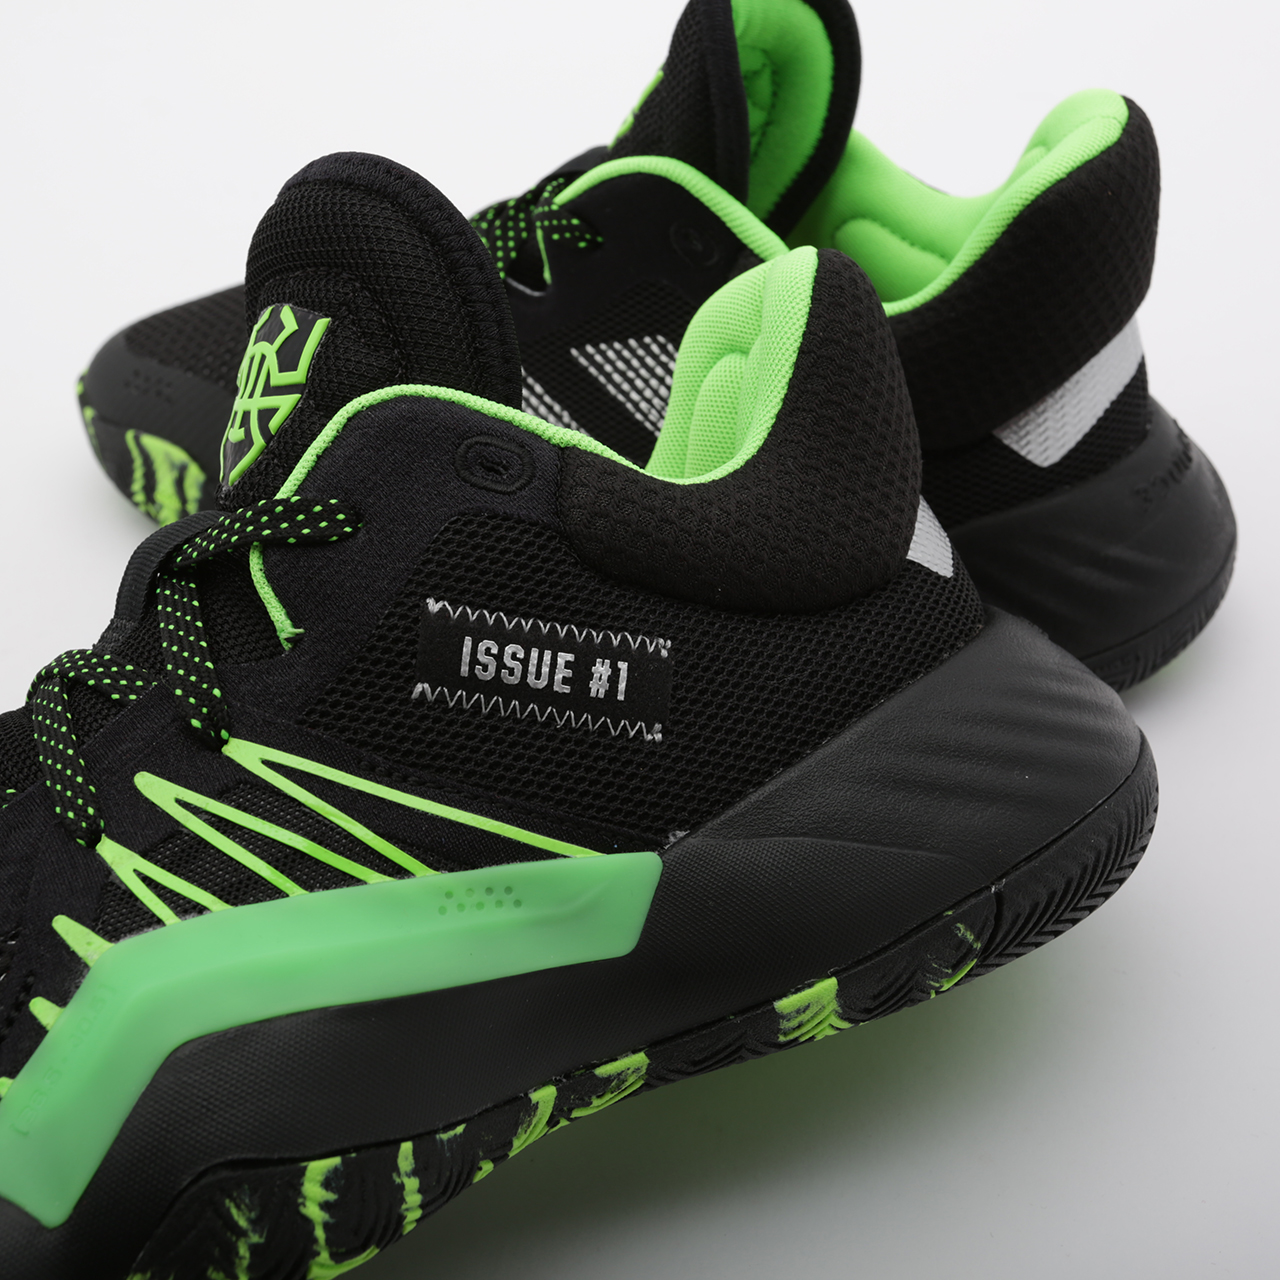 мужские черные баскетбольные кроссовки adidas D.O.N. Issue #1 EF2805 - цена, описание, фото 6